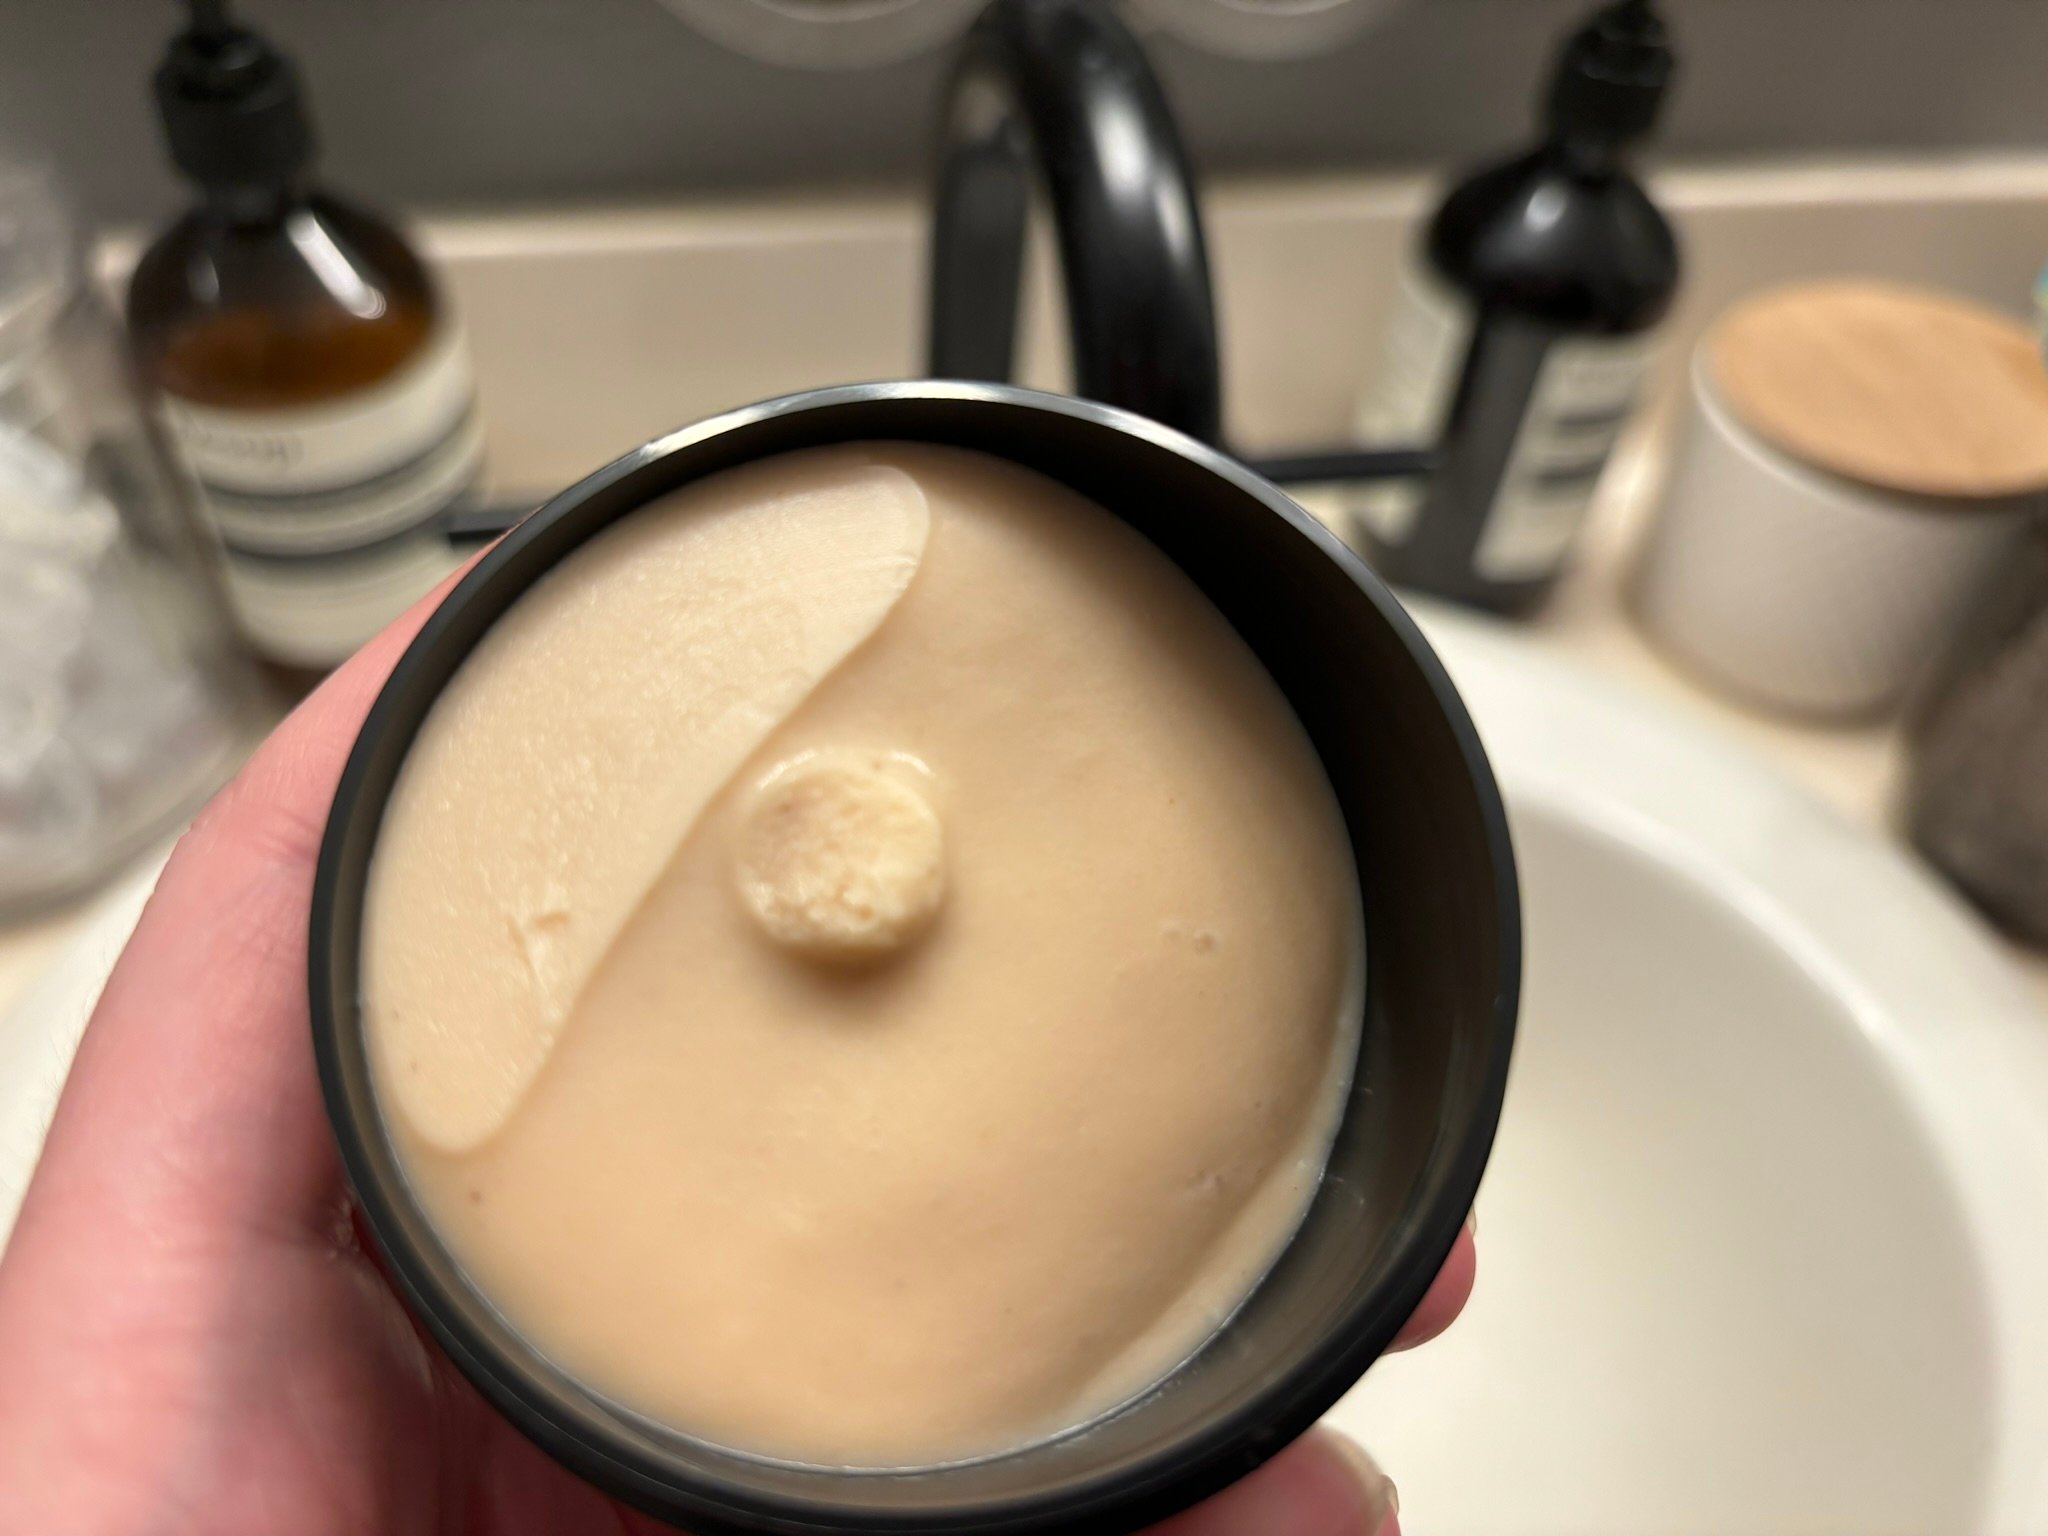 exfoliator cream inside a black tub